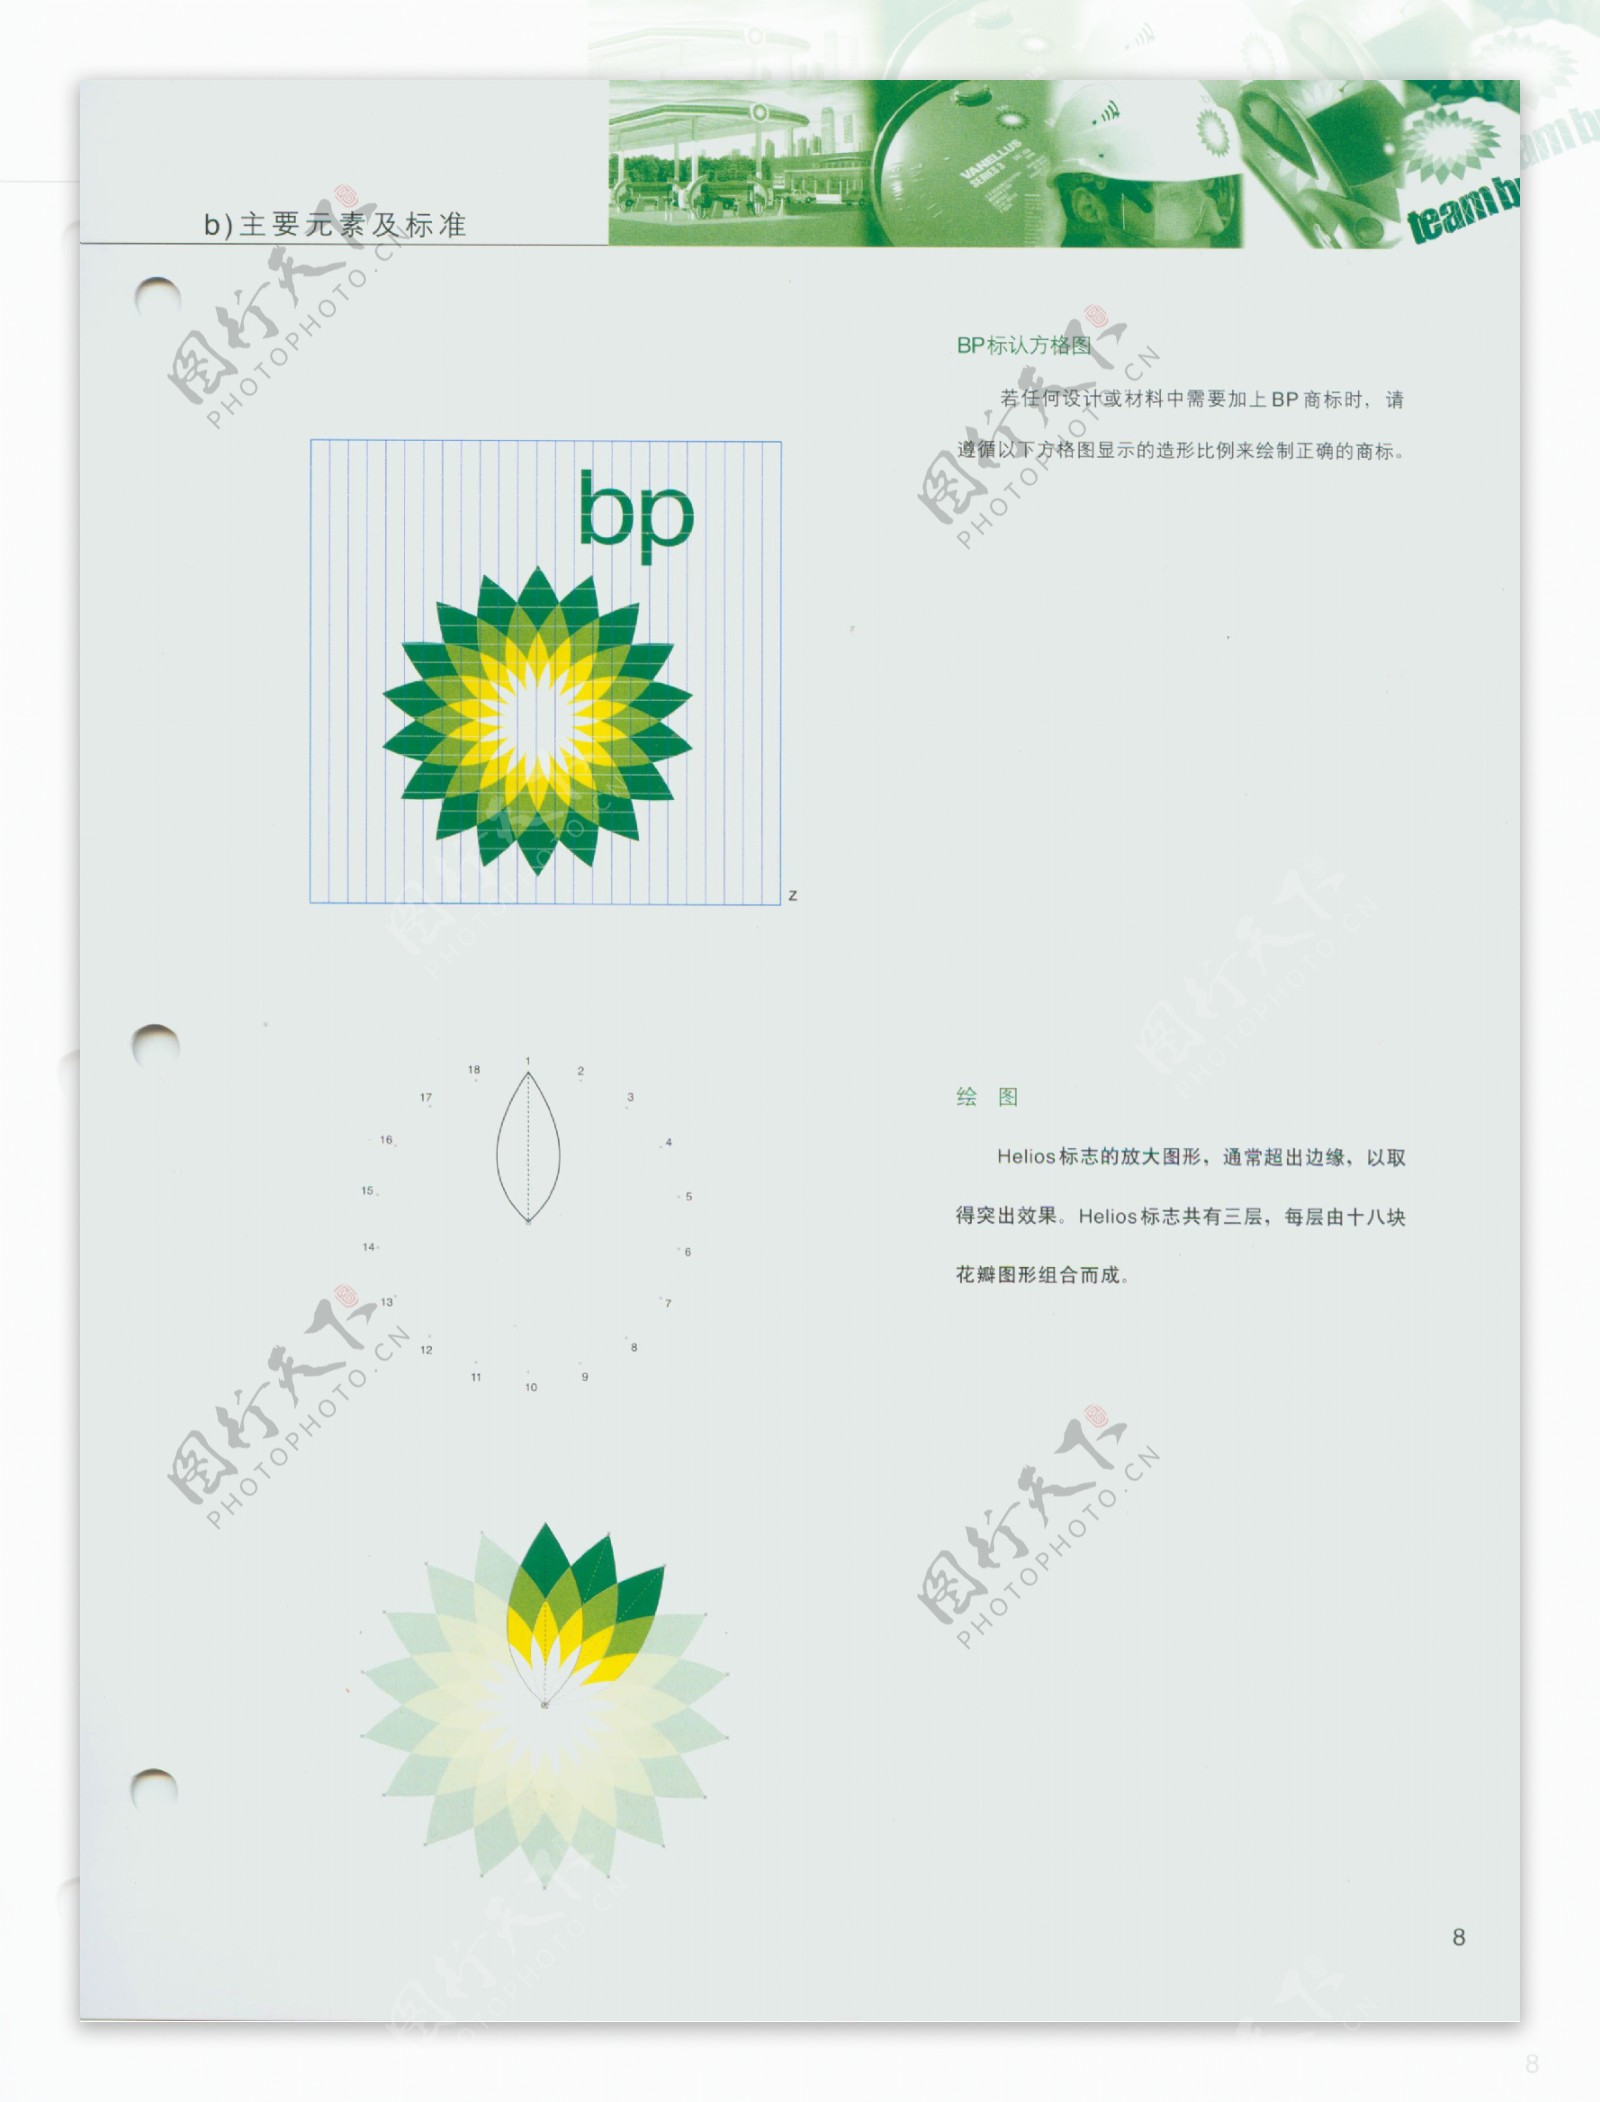 BP润滑油手册欣赏全套欣赏模板设计模板手册品牌形象推广手册欣赏推广手册广告设计设计办公用品视觉形象系统基础系统注明文件JPG格式